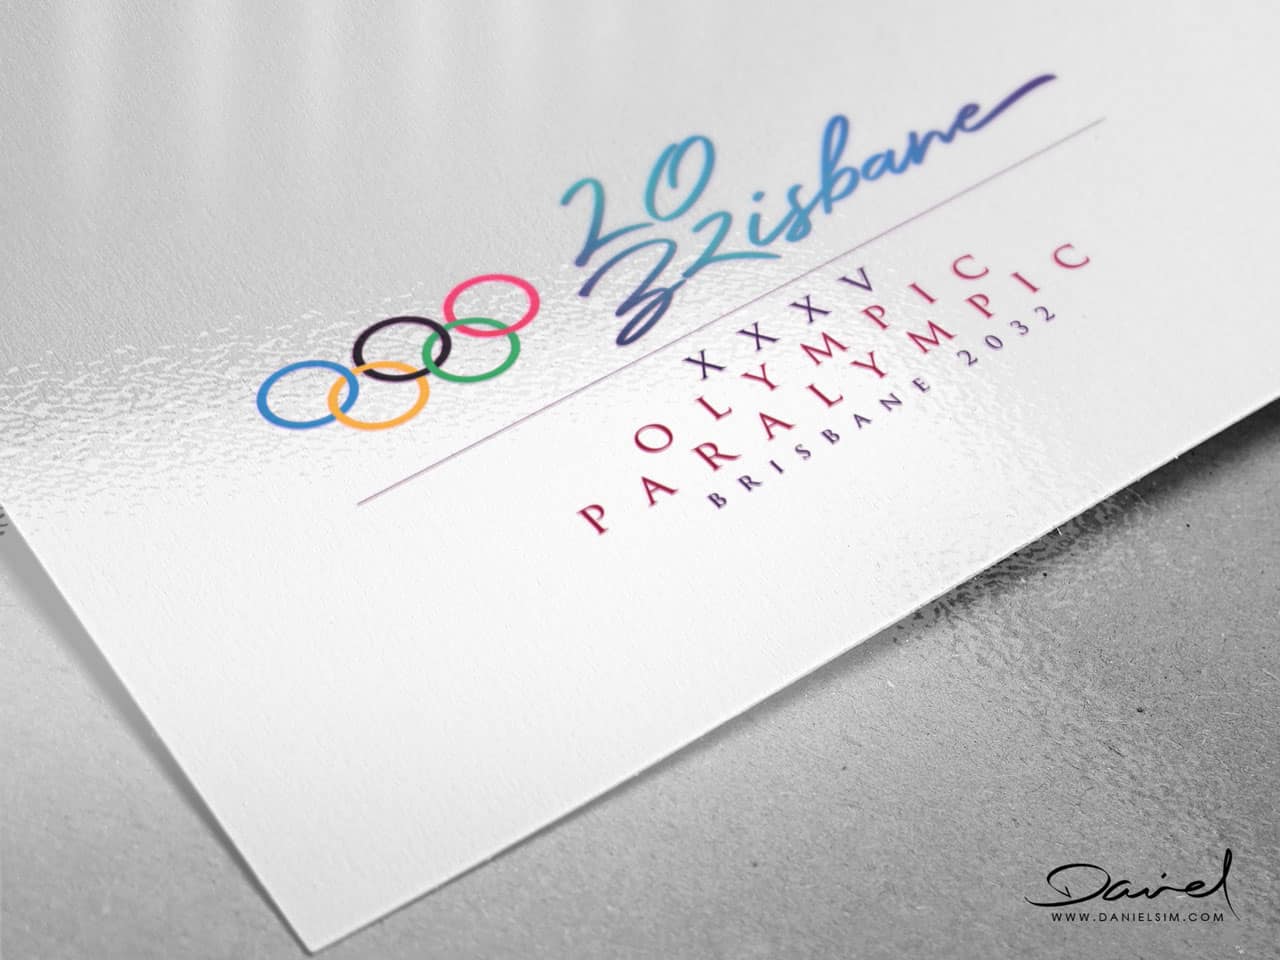 Brisbane Olympic Logo by Daniel Sim